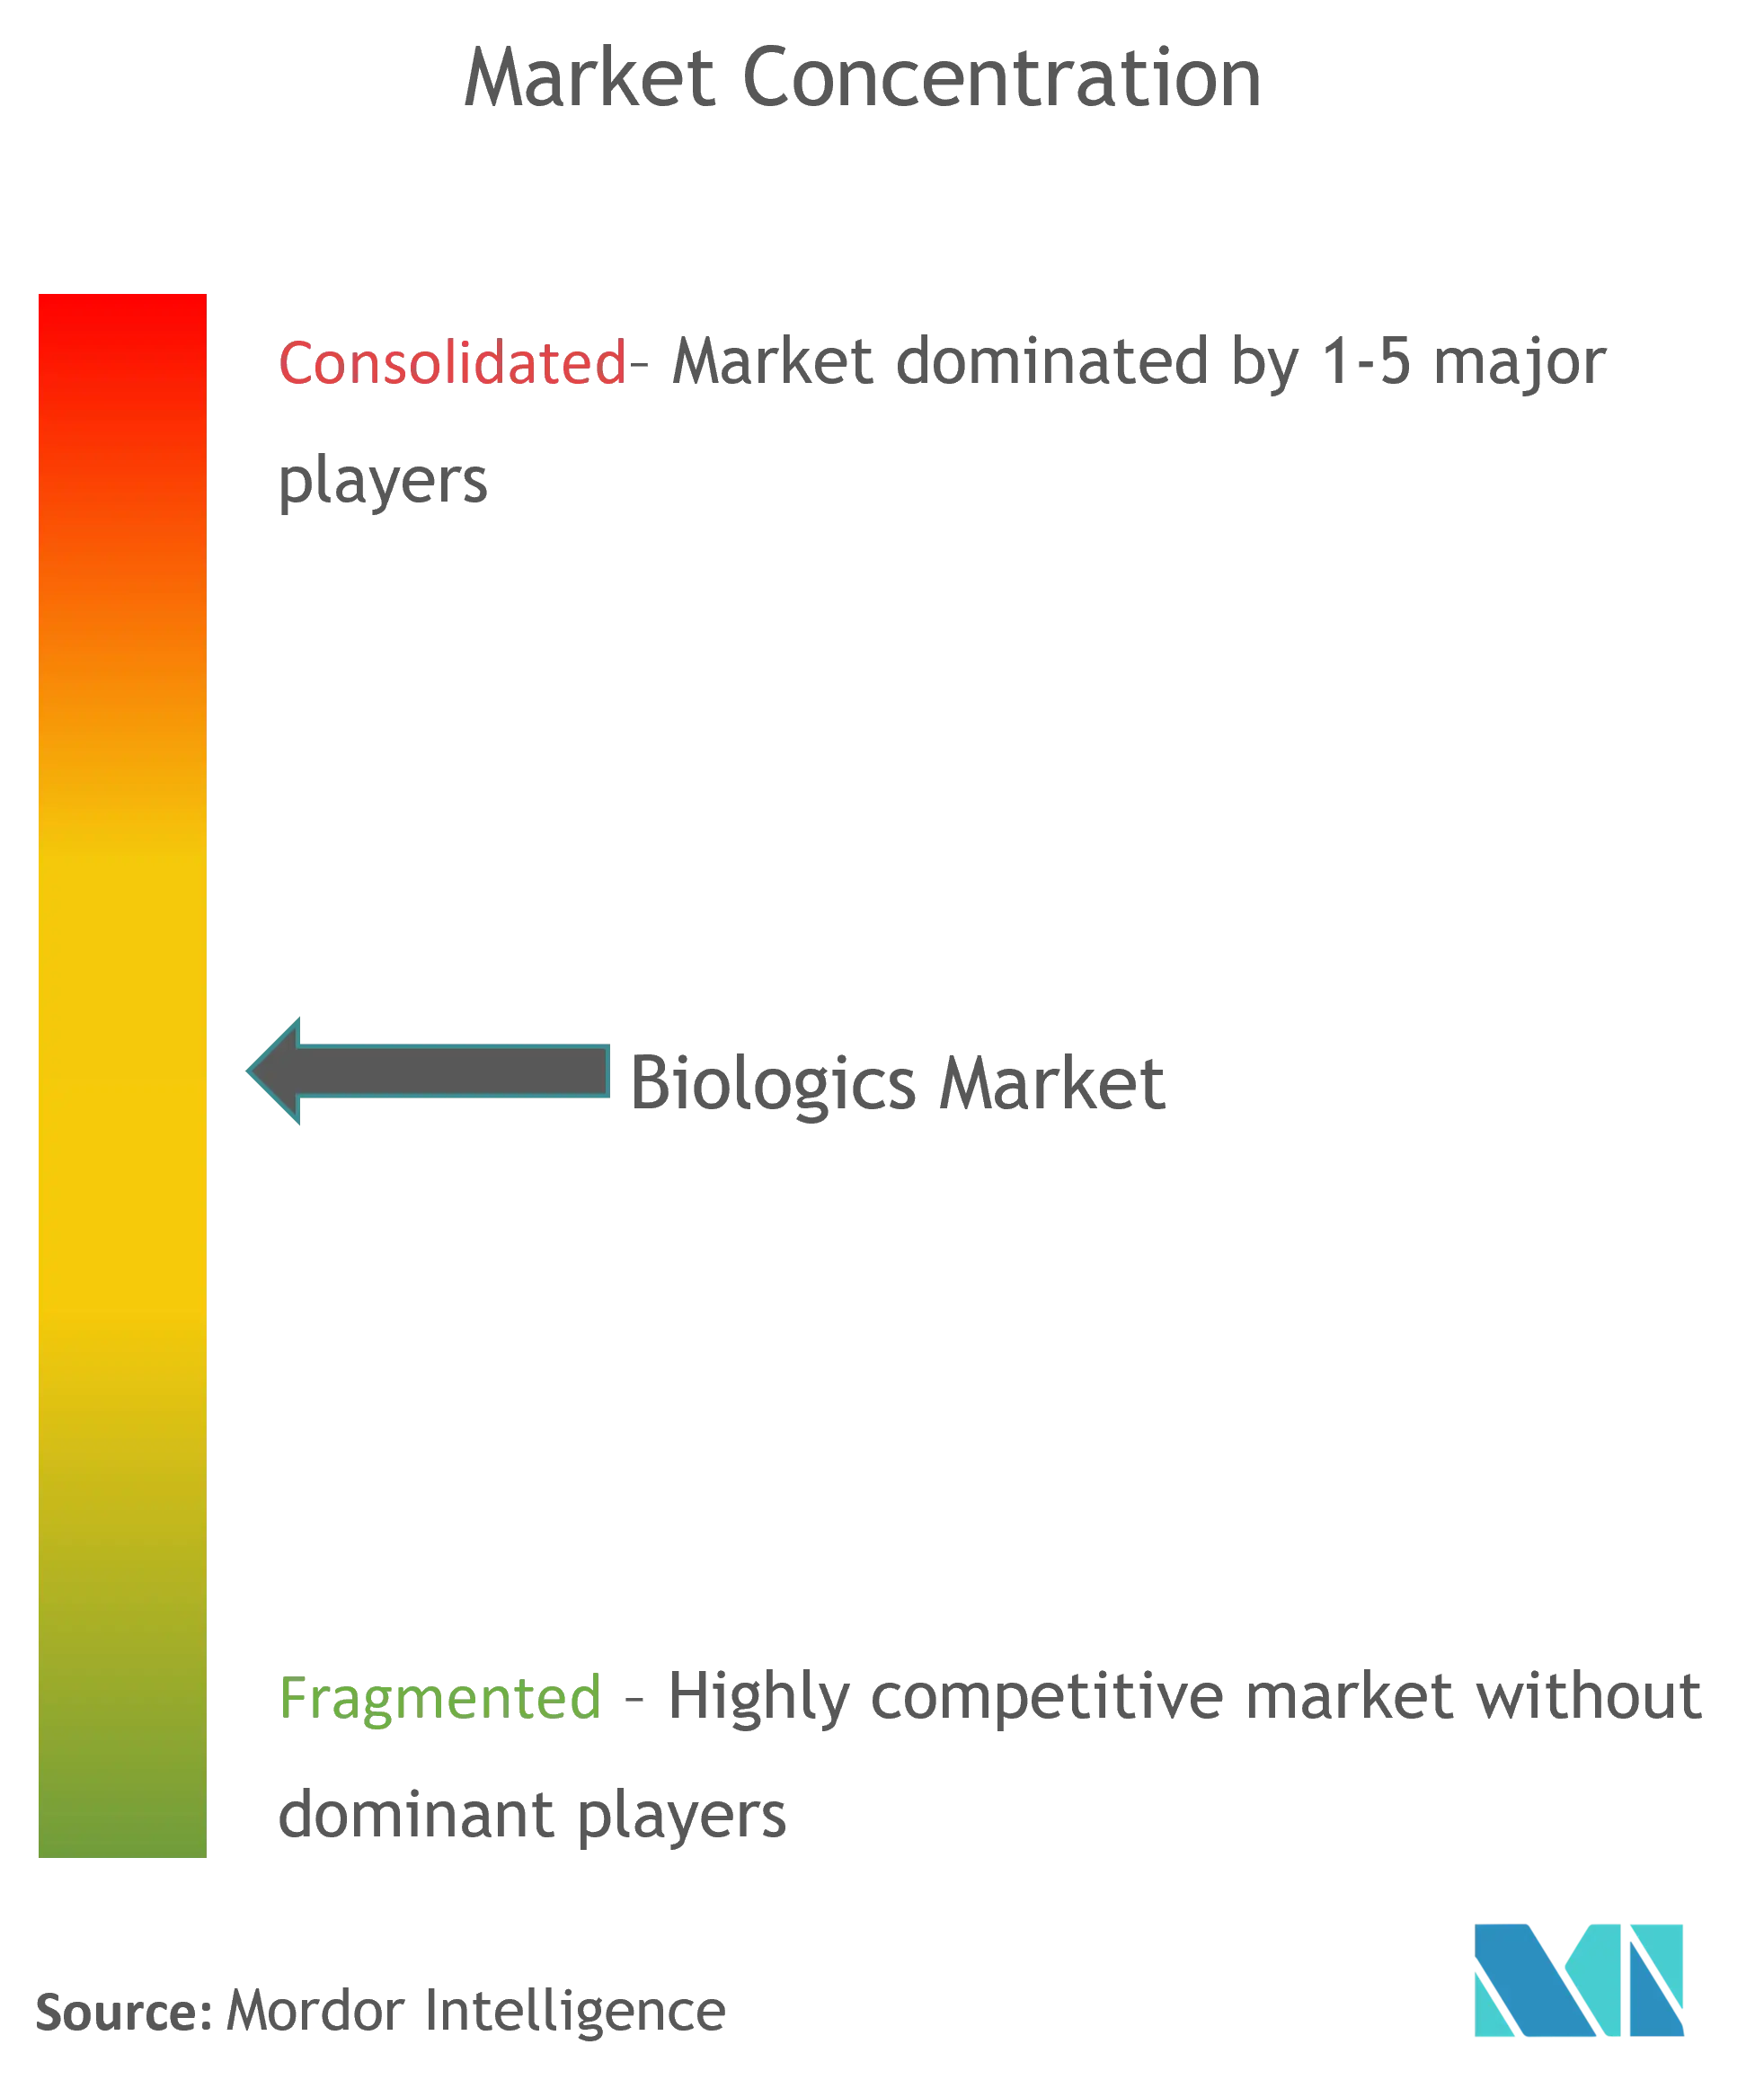 Biologics Market Concentration